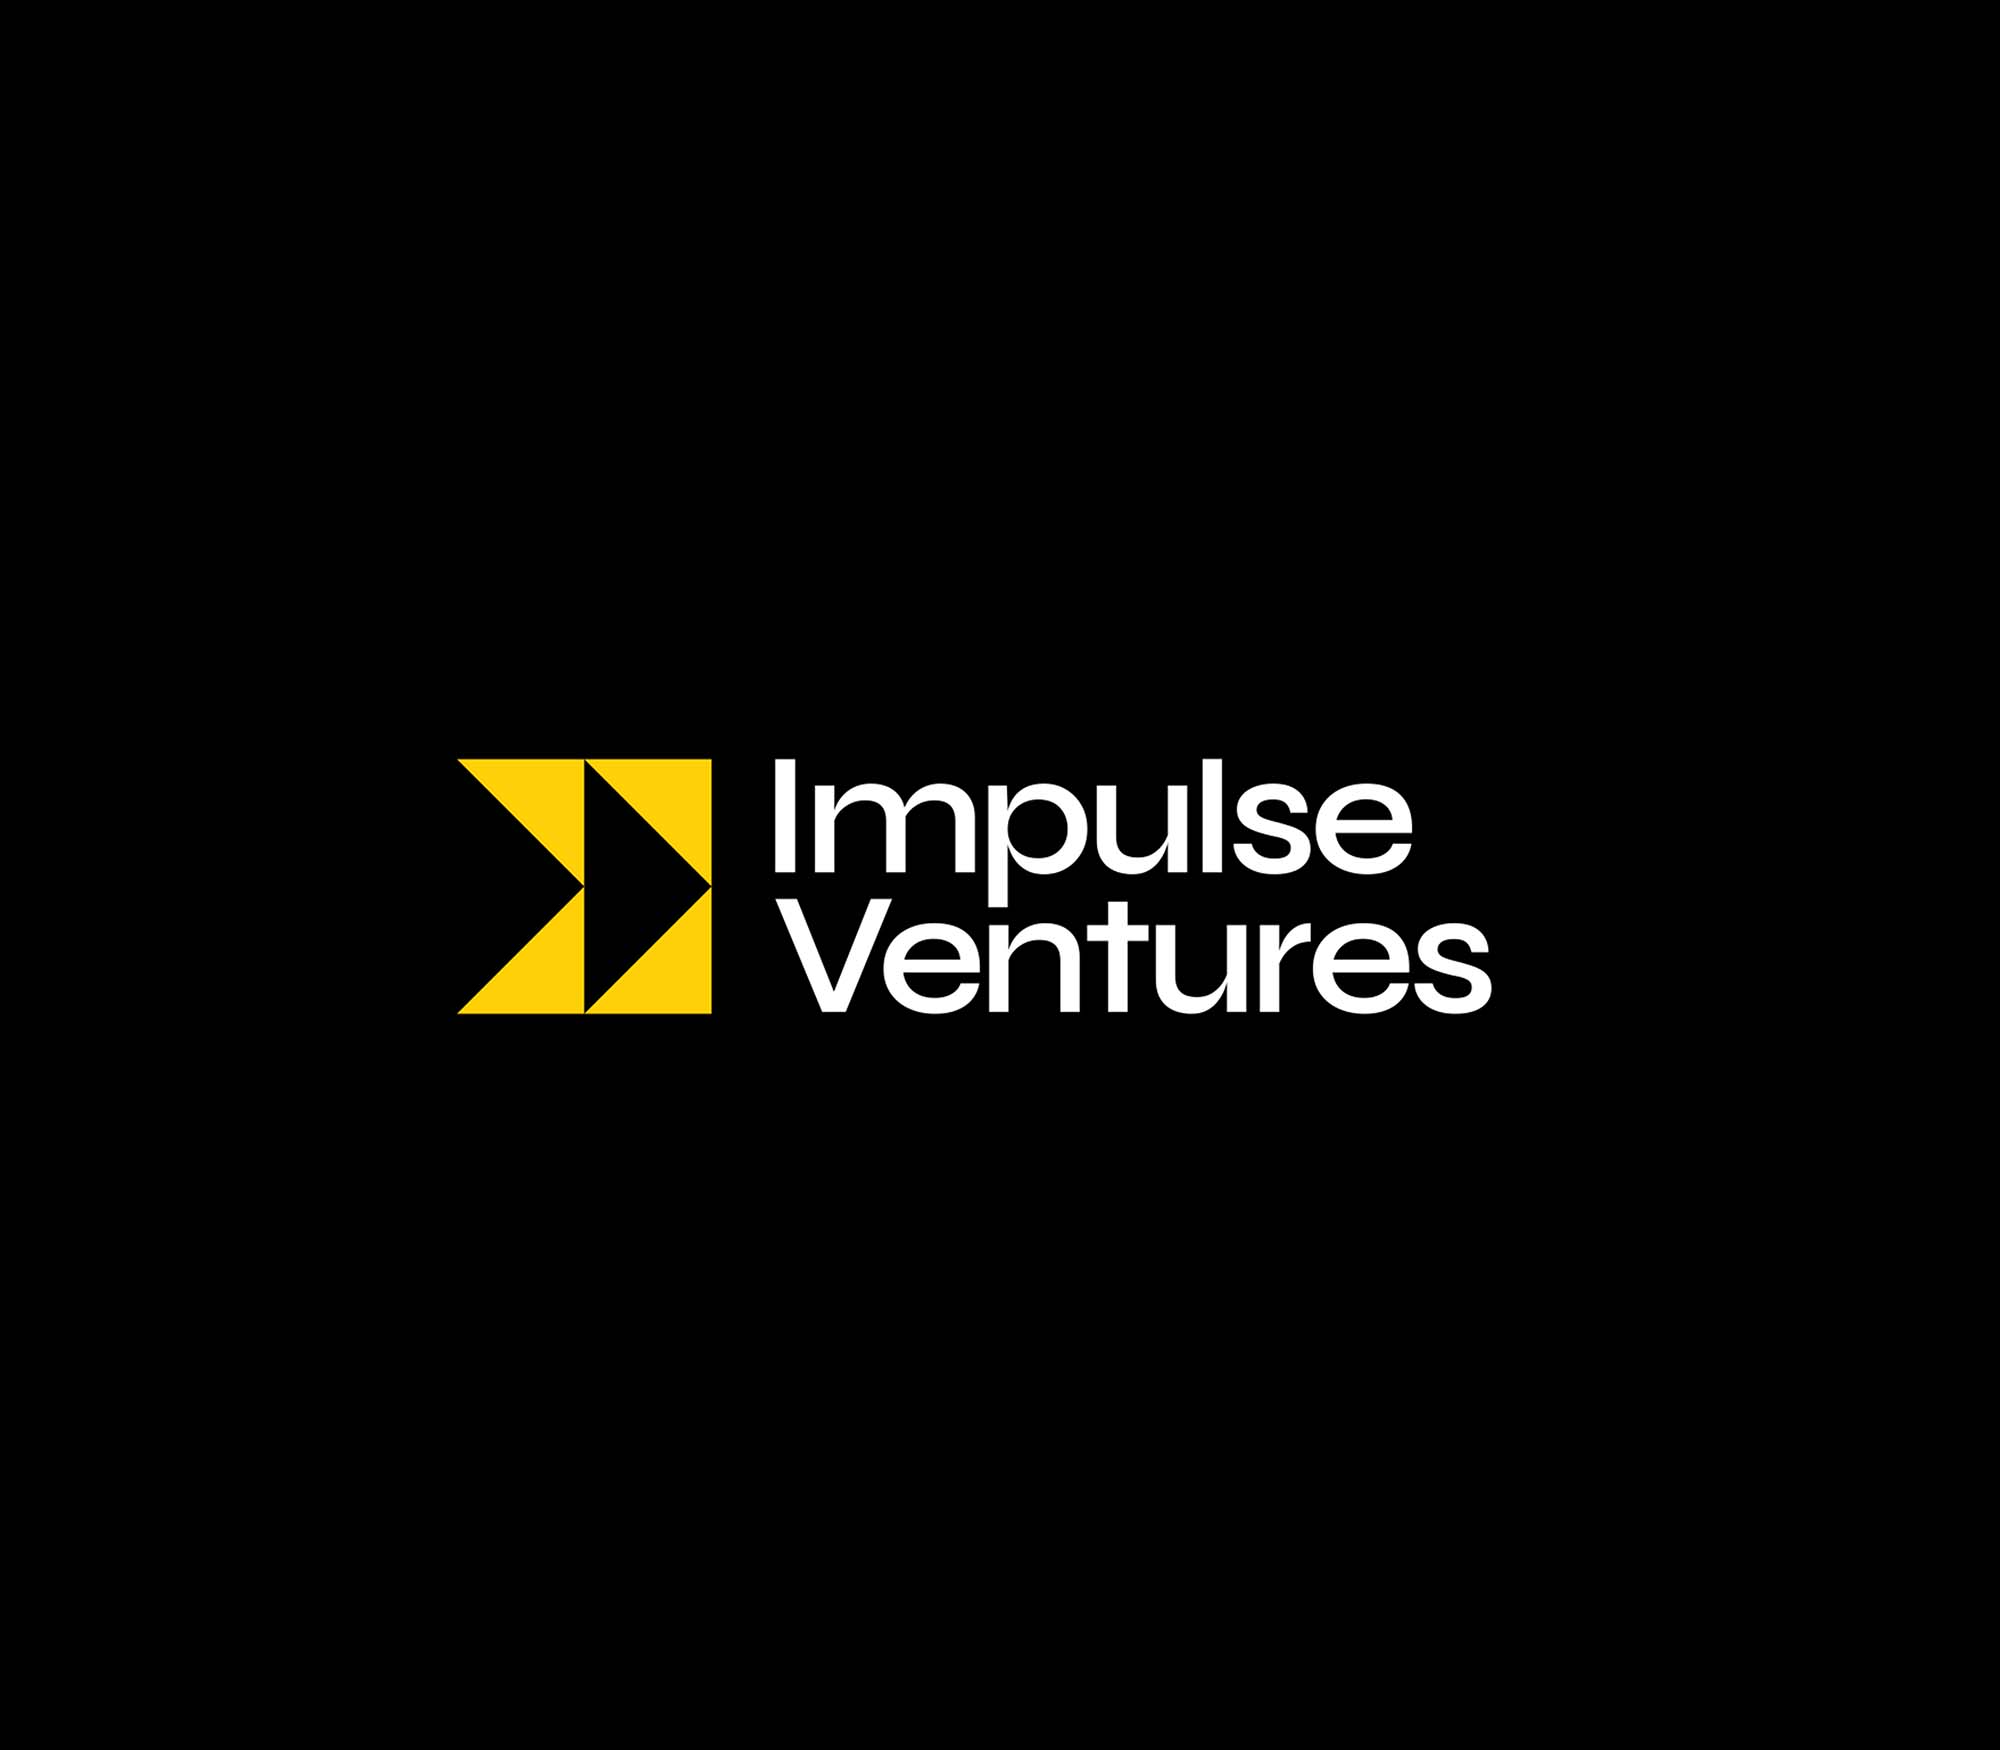 Impulse Ventures